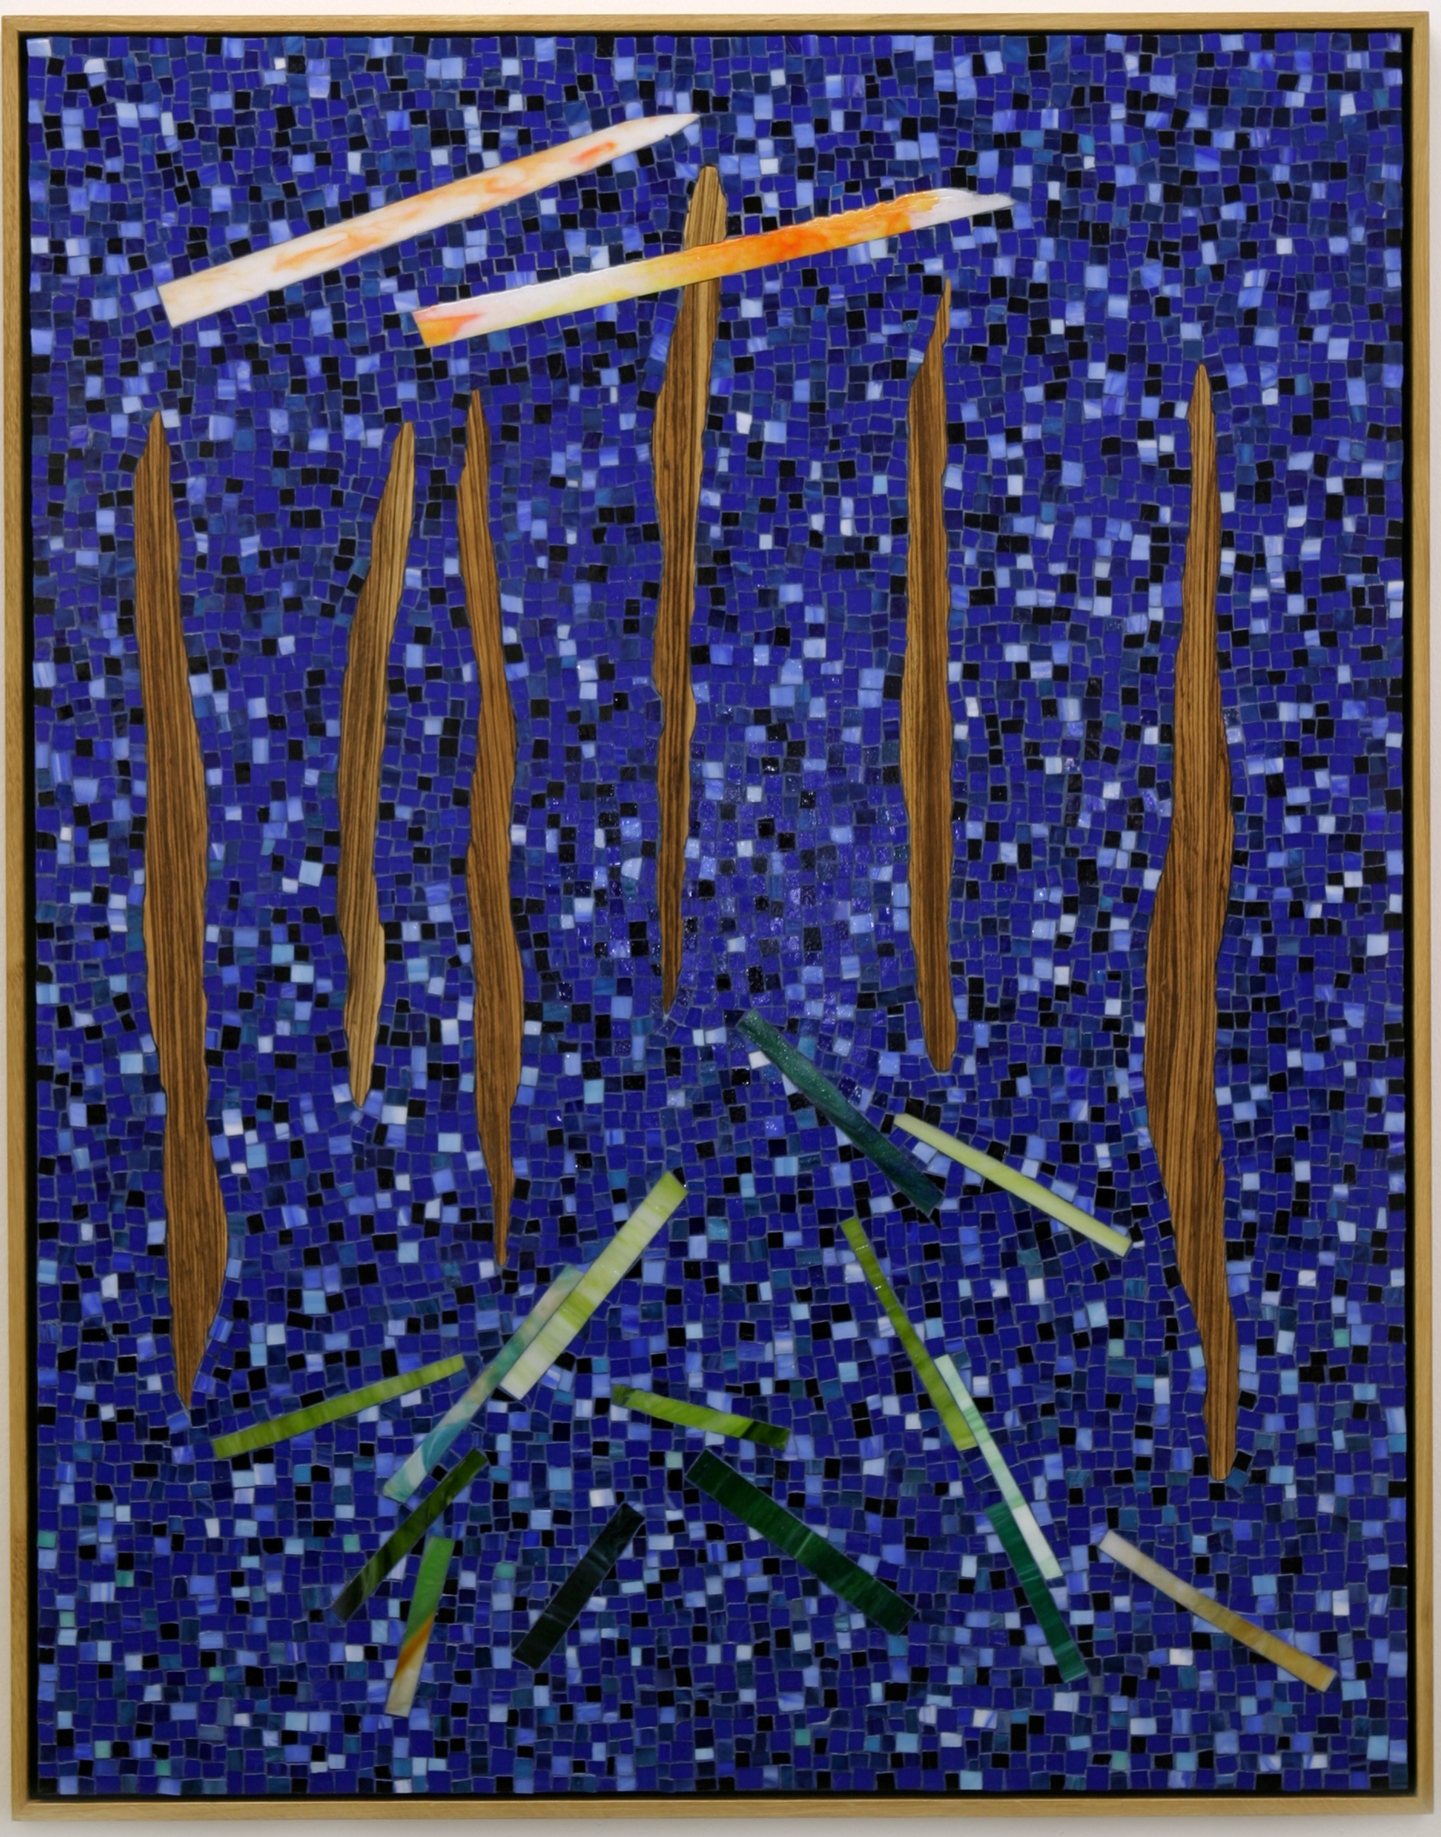 Thilo Heinzmann, Zum Atmen und Wünschen, 2004, glass, wood, 133 x 105 cm